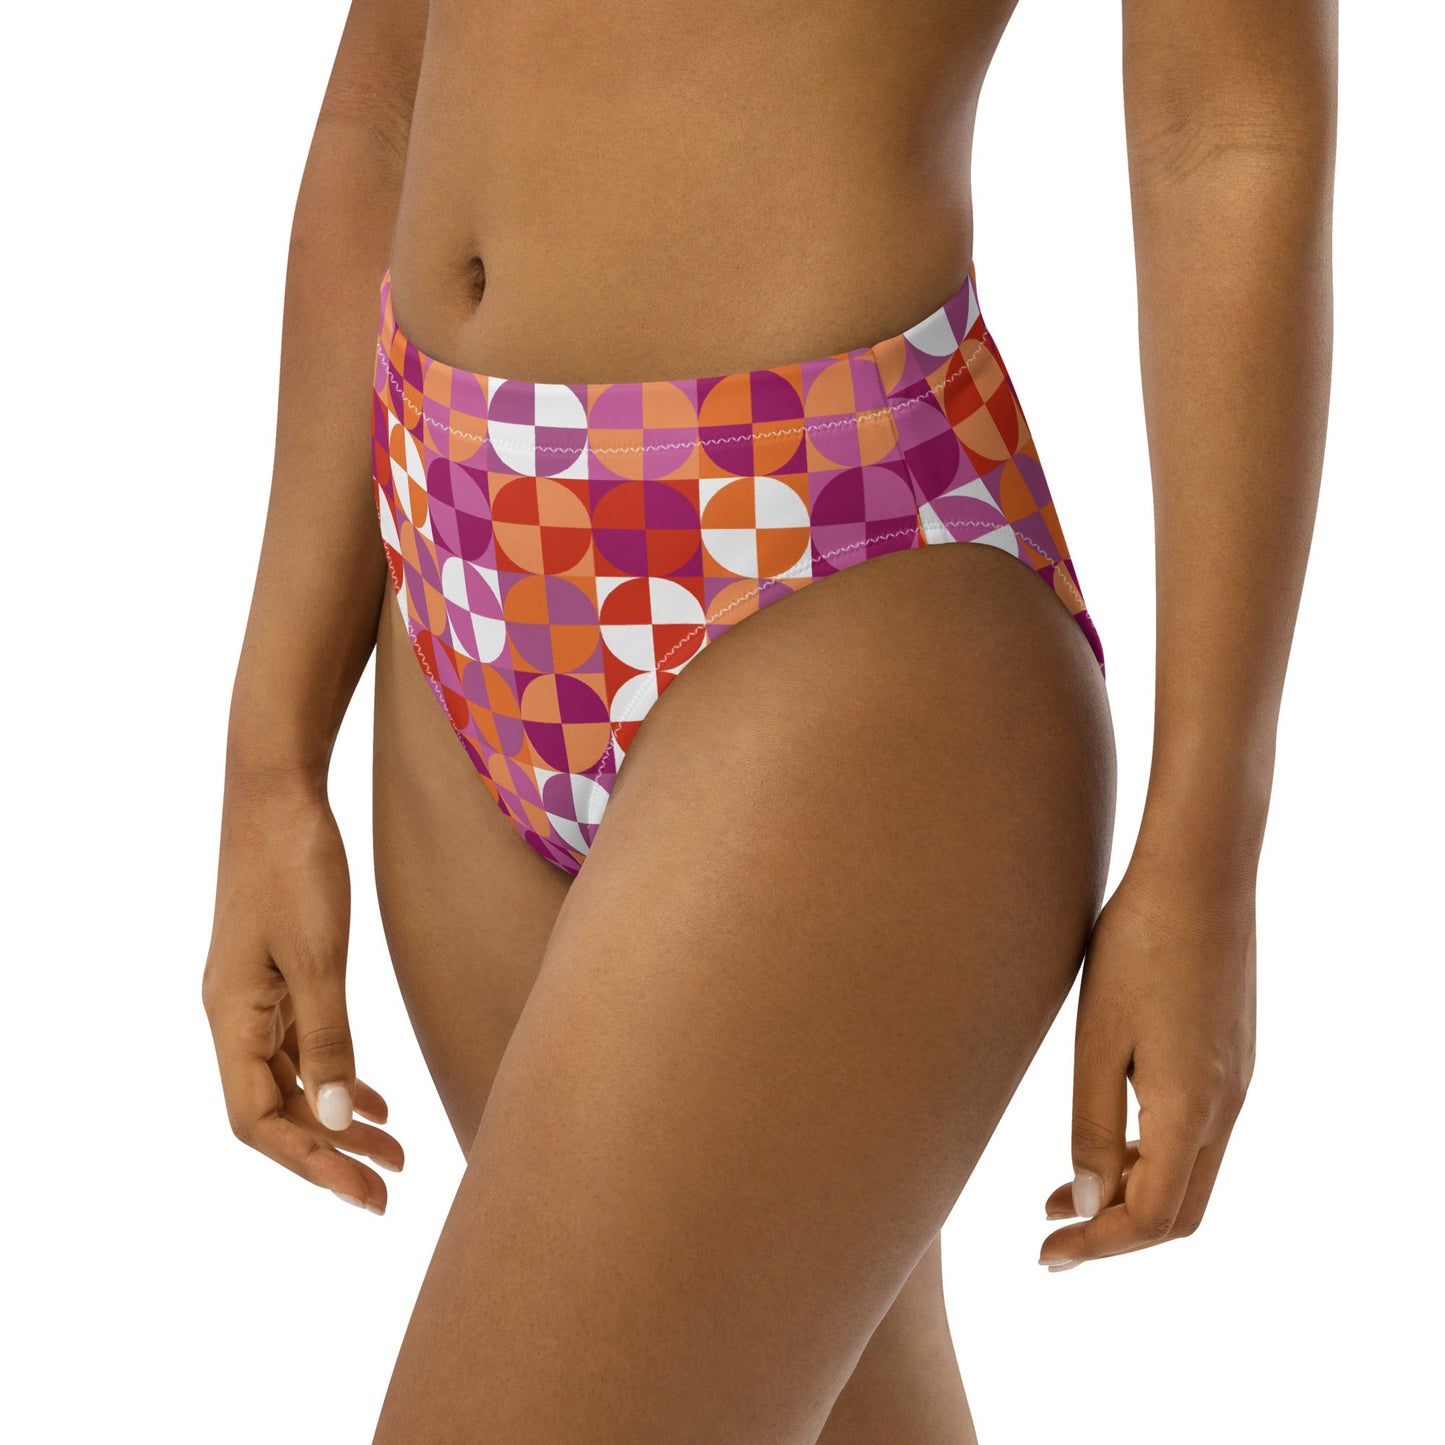 Lesbian Pride Recycled High-Waisted Bikini Bottom Swimwear